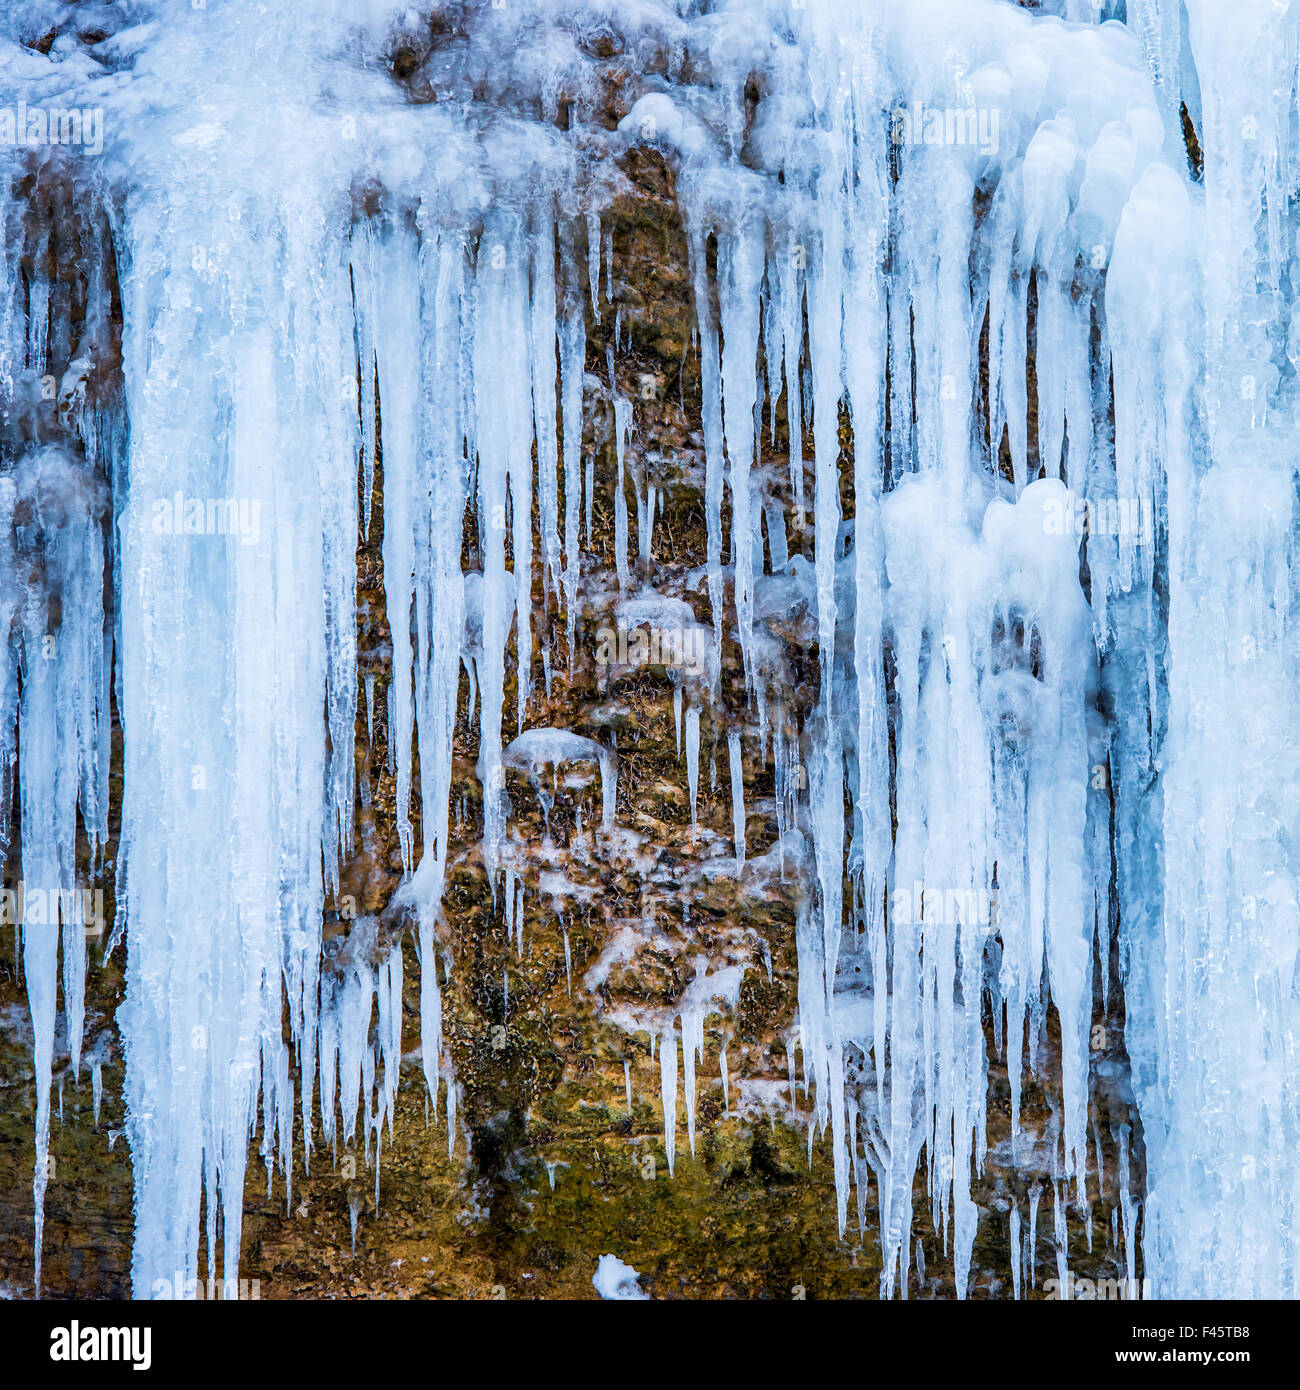 Gefrorener Wasserfall des blauen Eiszapfen Stockfoto